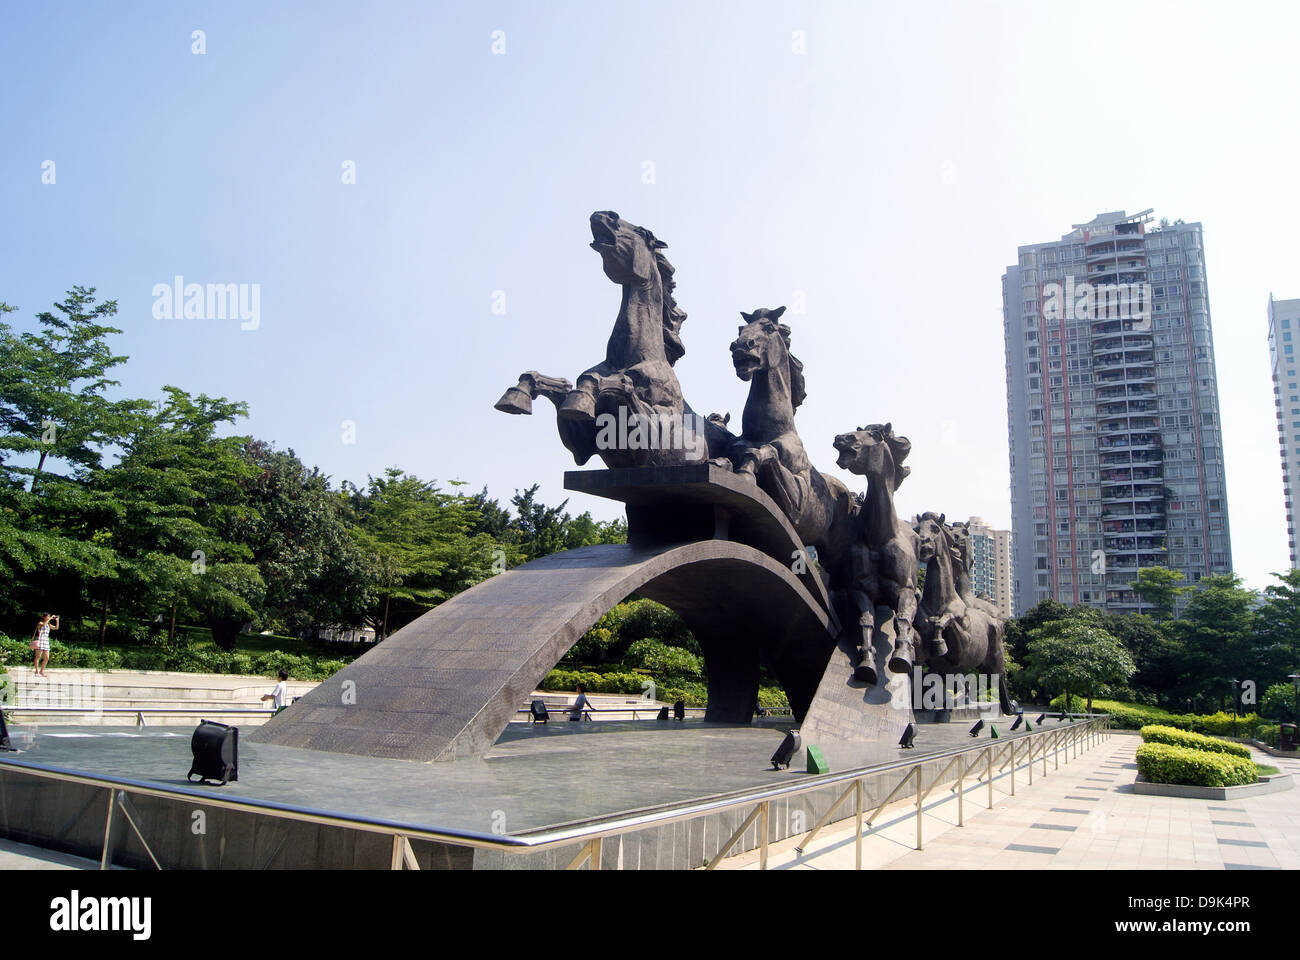 Shenzhen Chine : horse sculpture. Ganoderma lucidum park à Shenzhen, il y a quelques belles sculptures de chevaux, est un beau paysage Banque D'Images